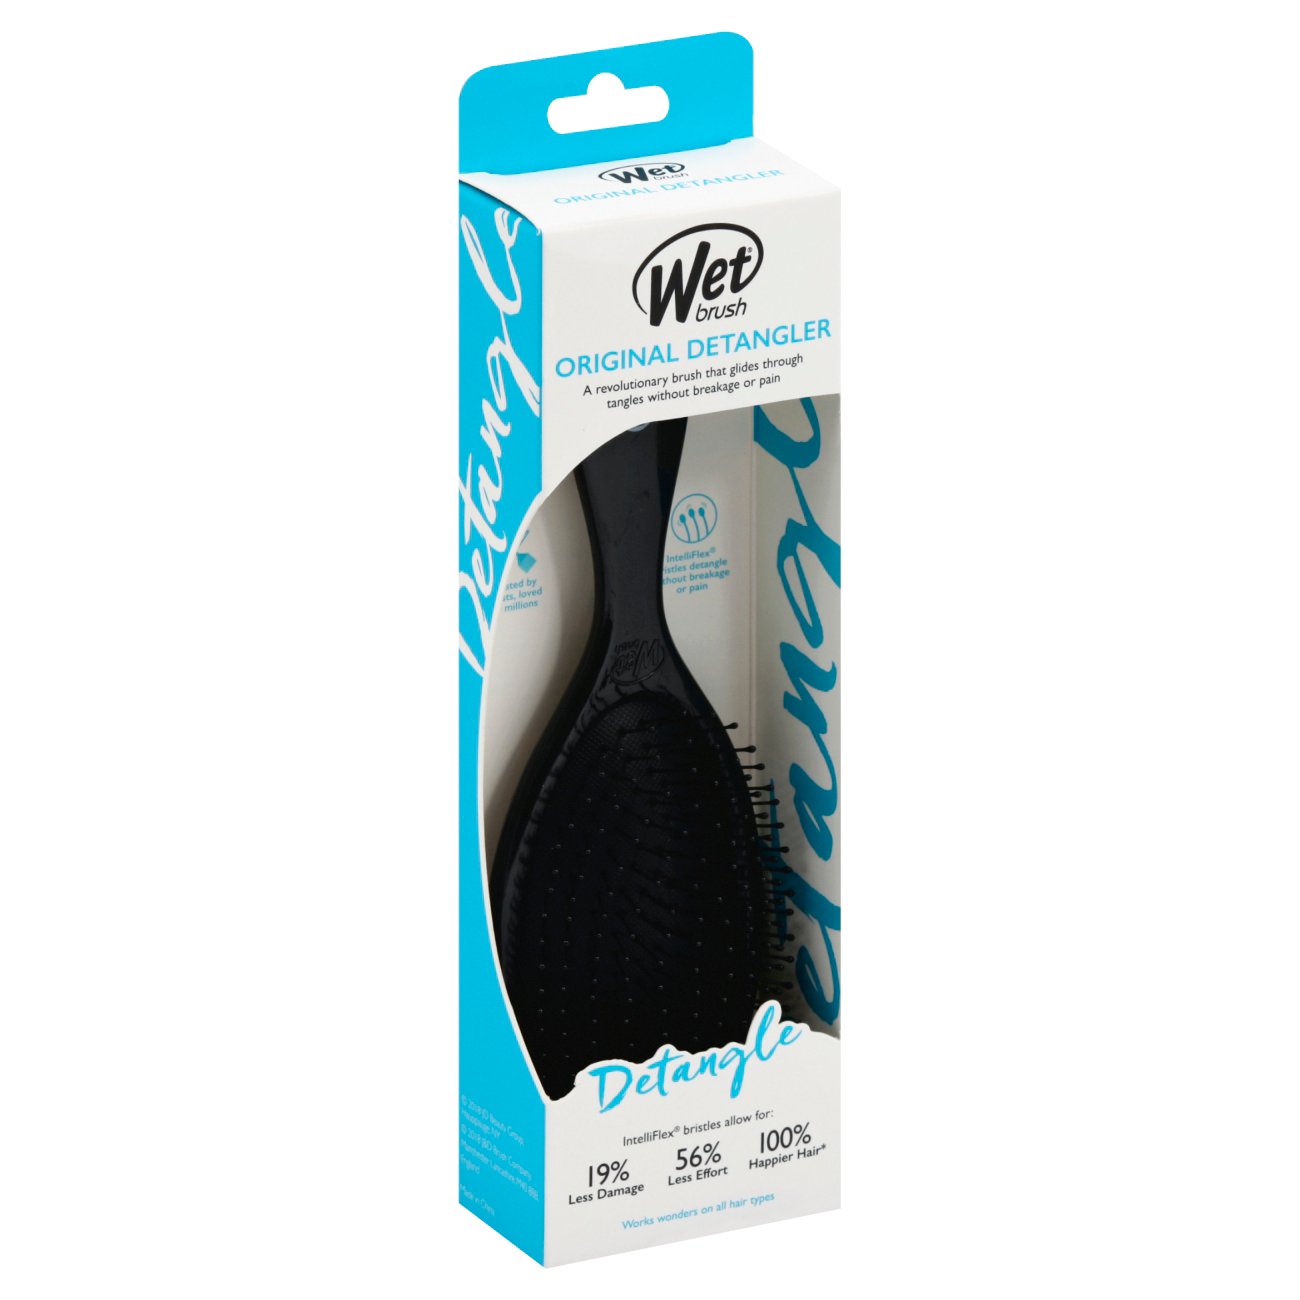 Wet Brush Original Detangler Brush, Black - Shop Hair Care at H-E-B